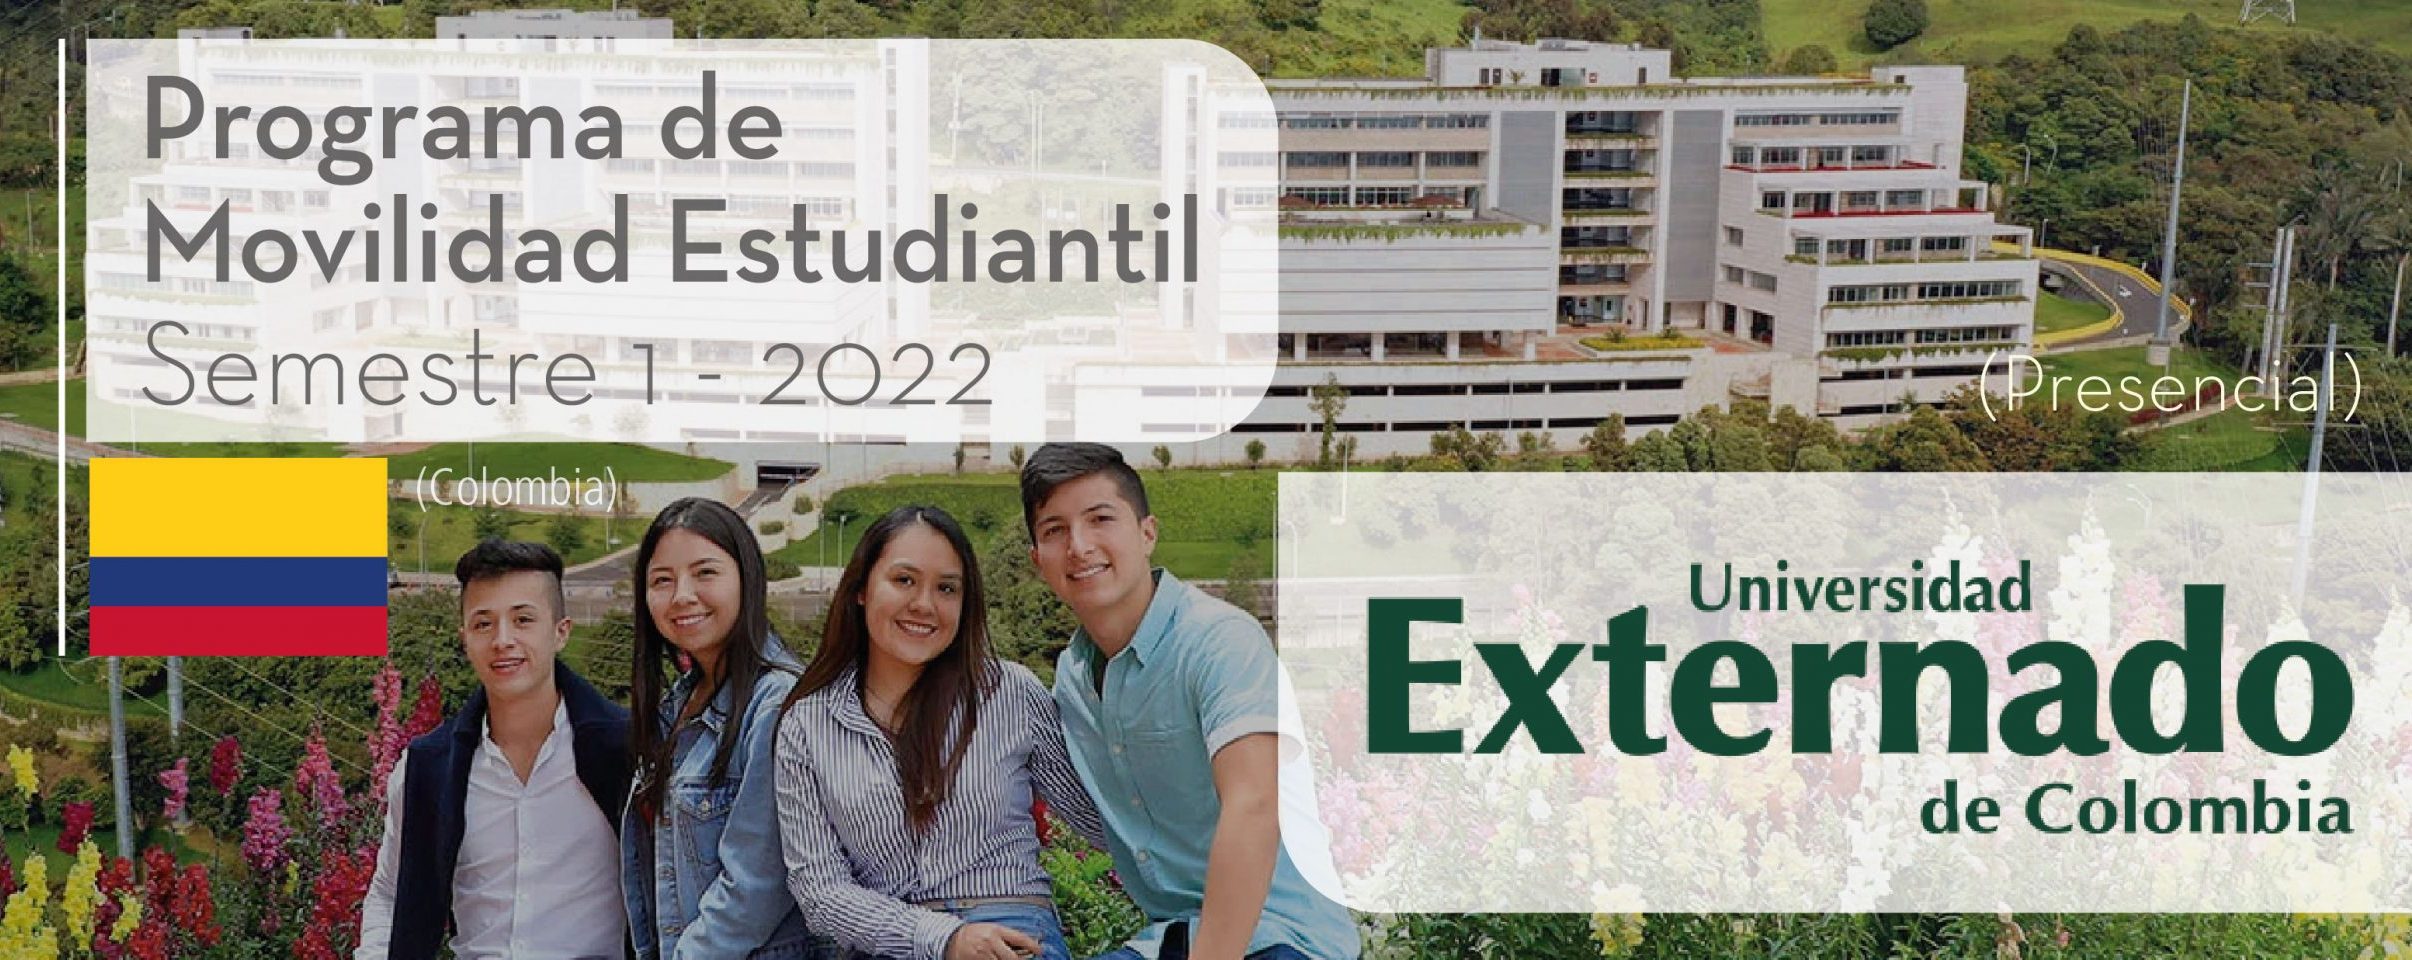 La Universidad Externado de Colombia es parte del Programa de Movilidad Estudiantil UCB por el Mundo.